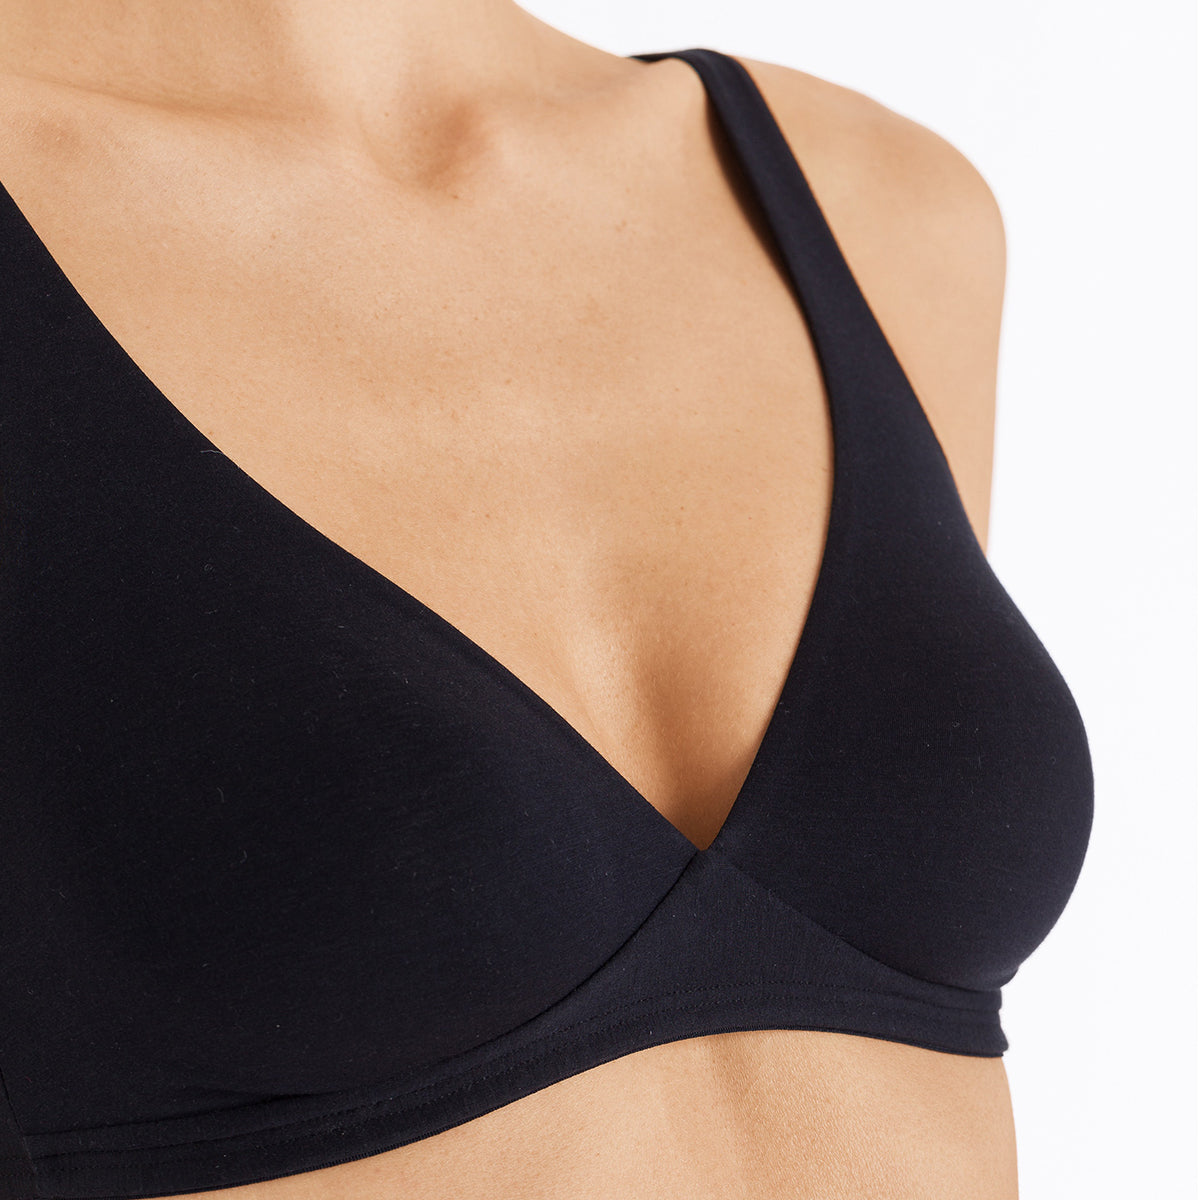 Hanro lingerie bras Moments bralette bra grey 071465 |Italian Design